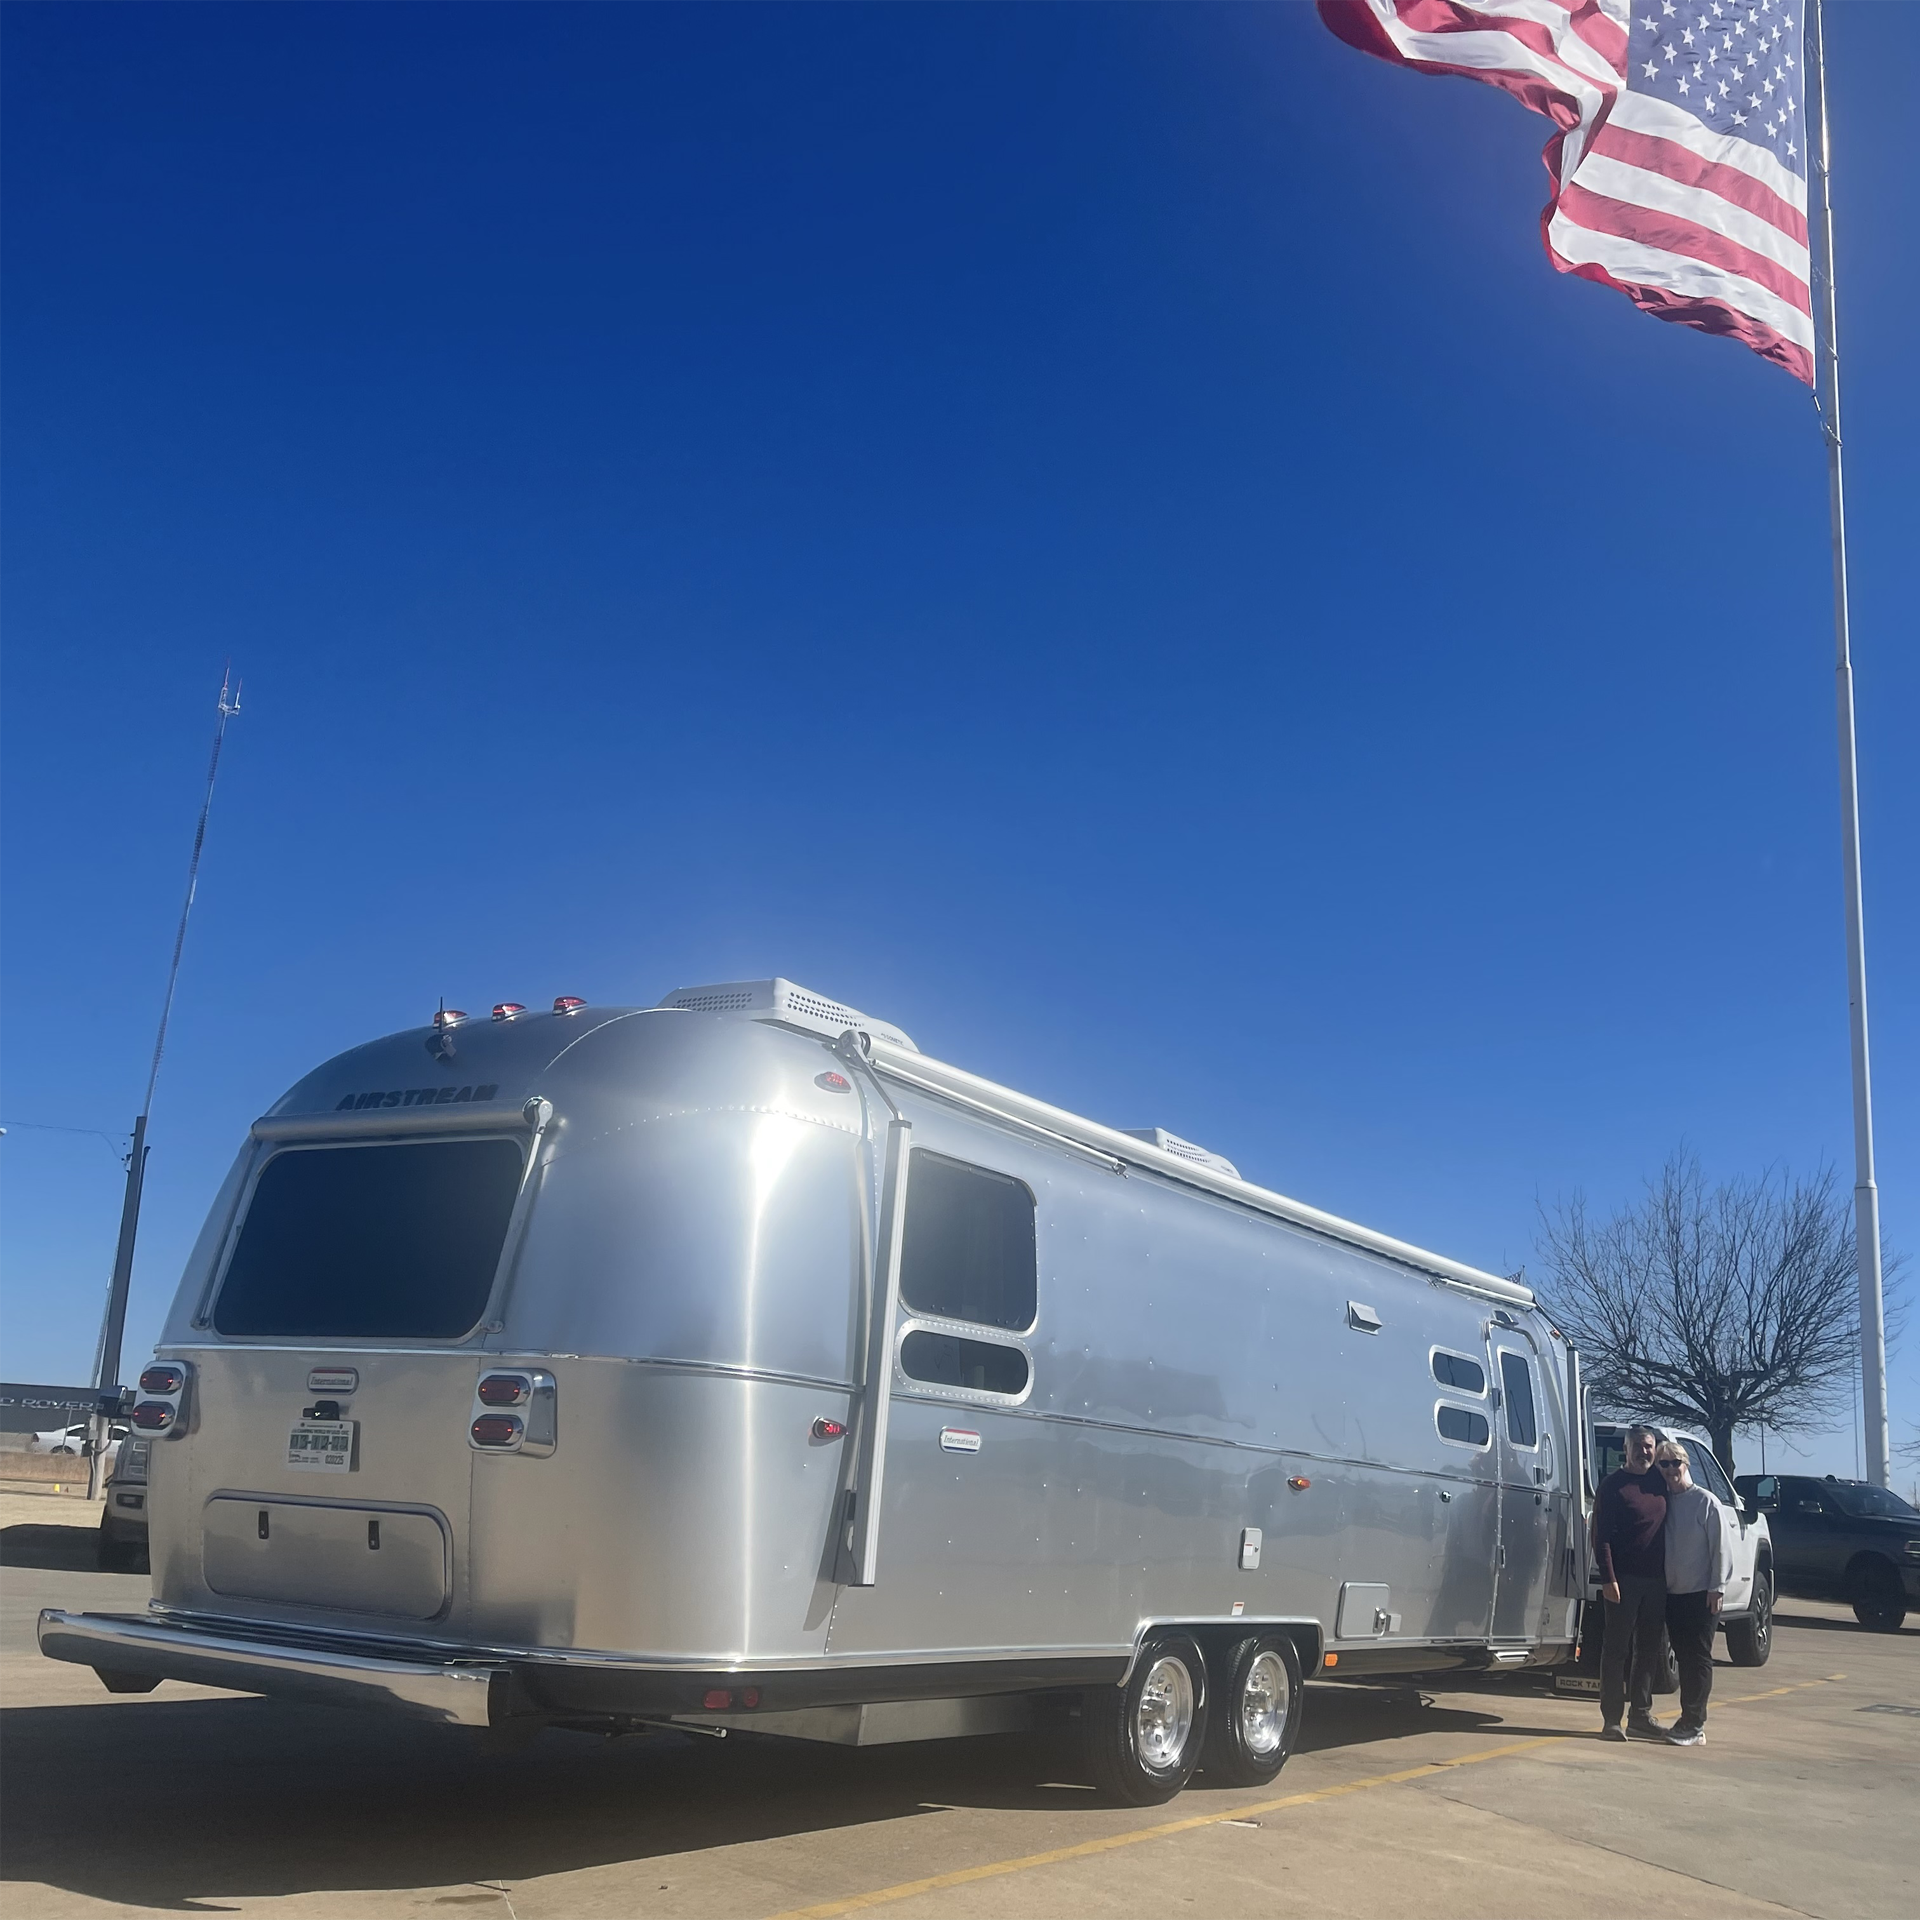 吉姆和苏珊微笑着在他们的新Airstream国际旅行拖车露营车旁拍照，美国国旗飘扬在蓝色的天空中。